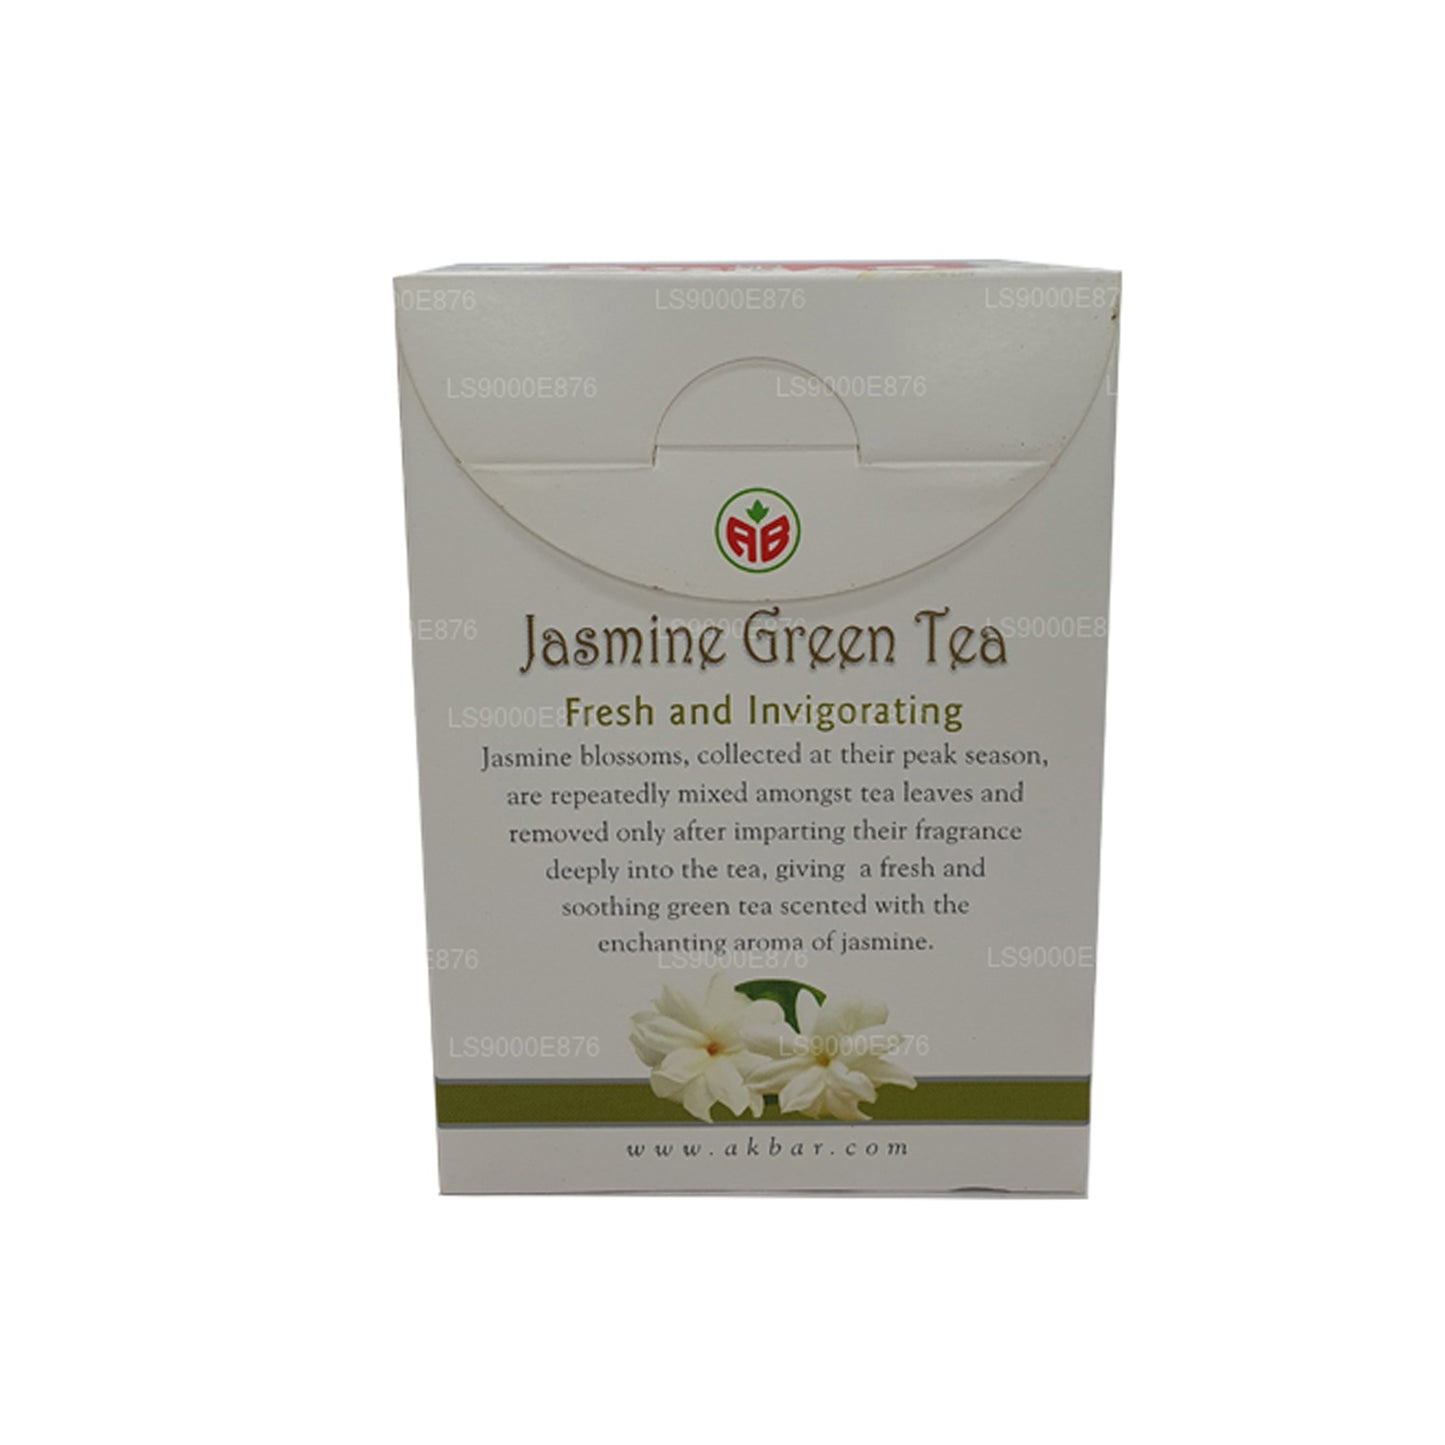 Té verde de jazmín Akbar (36 g) 20 bolsitas de té